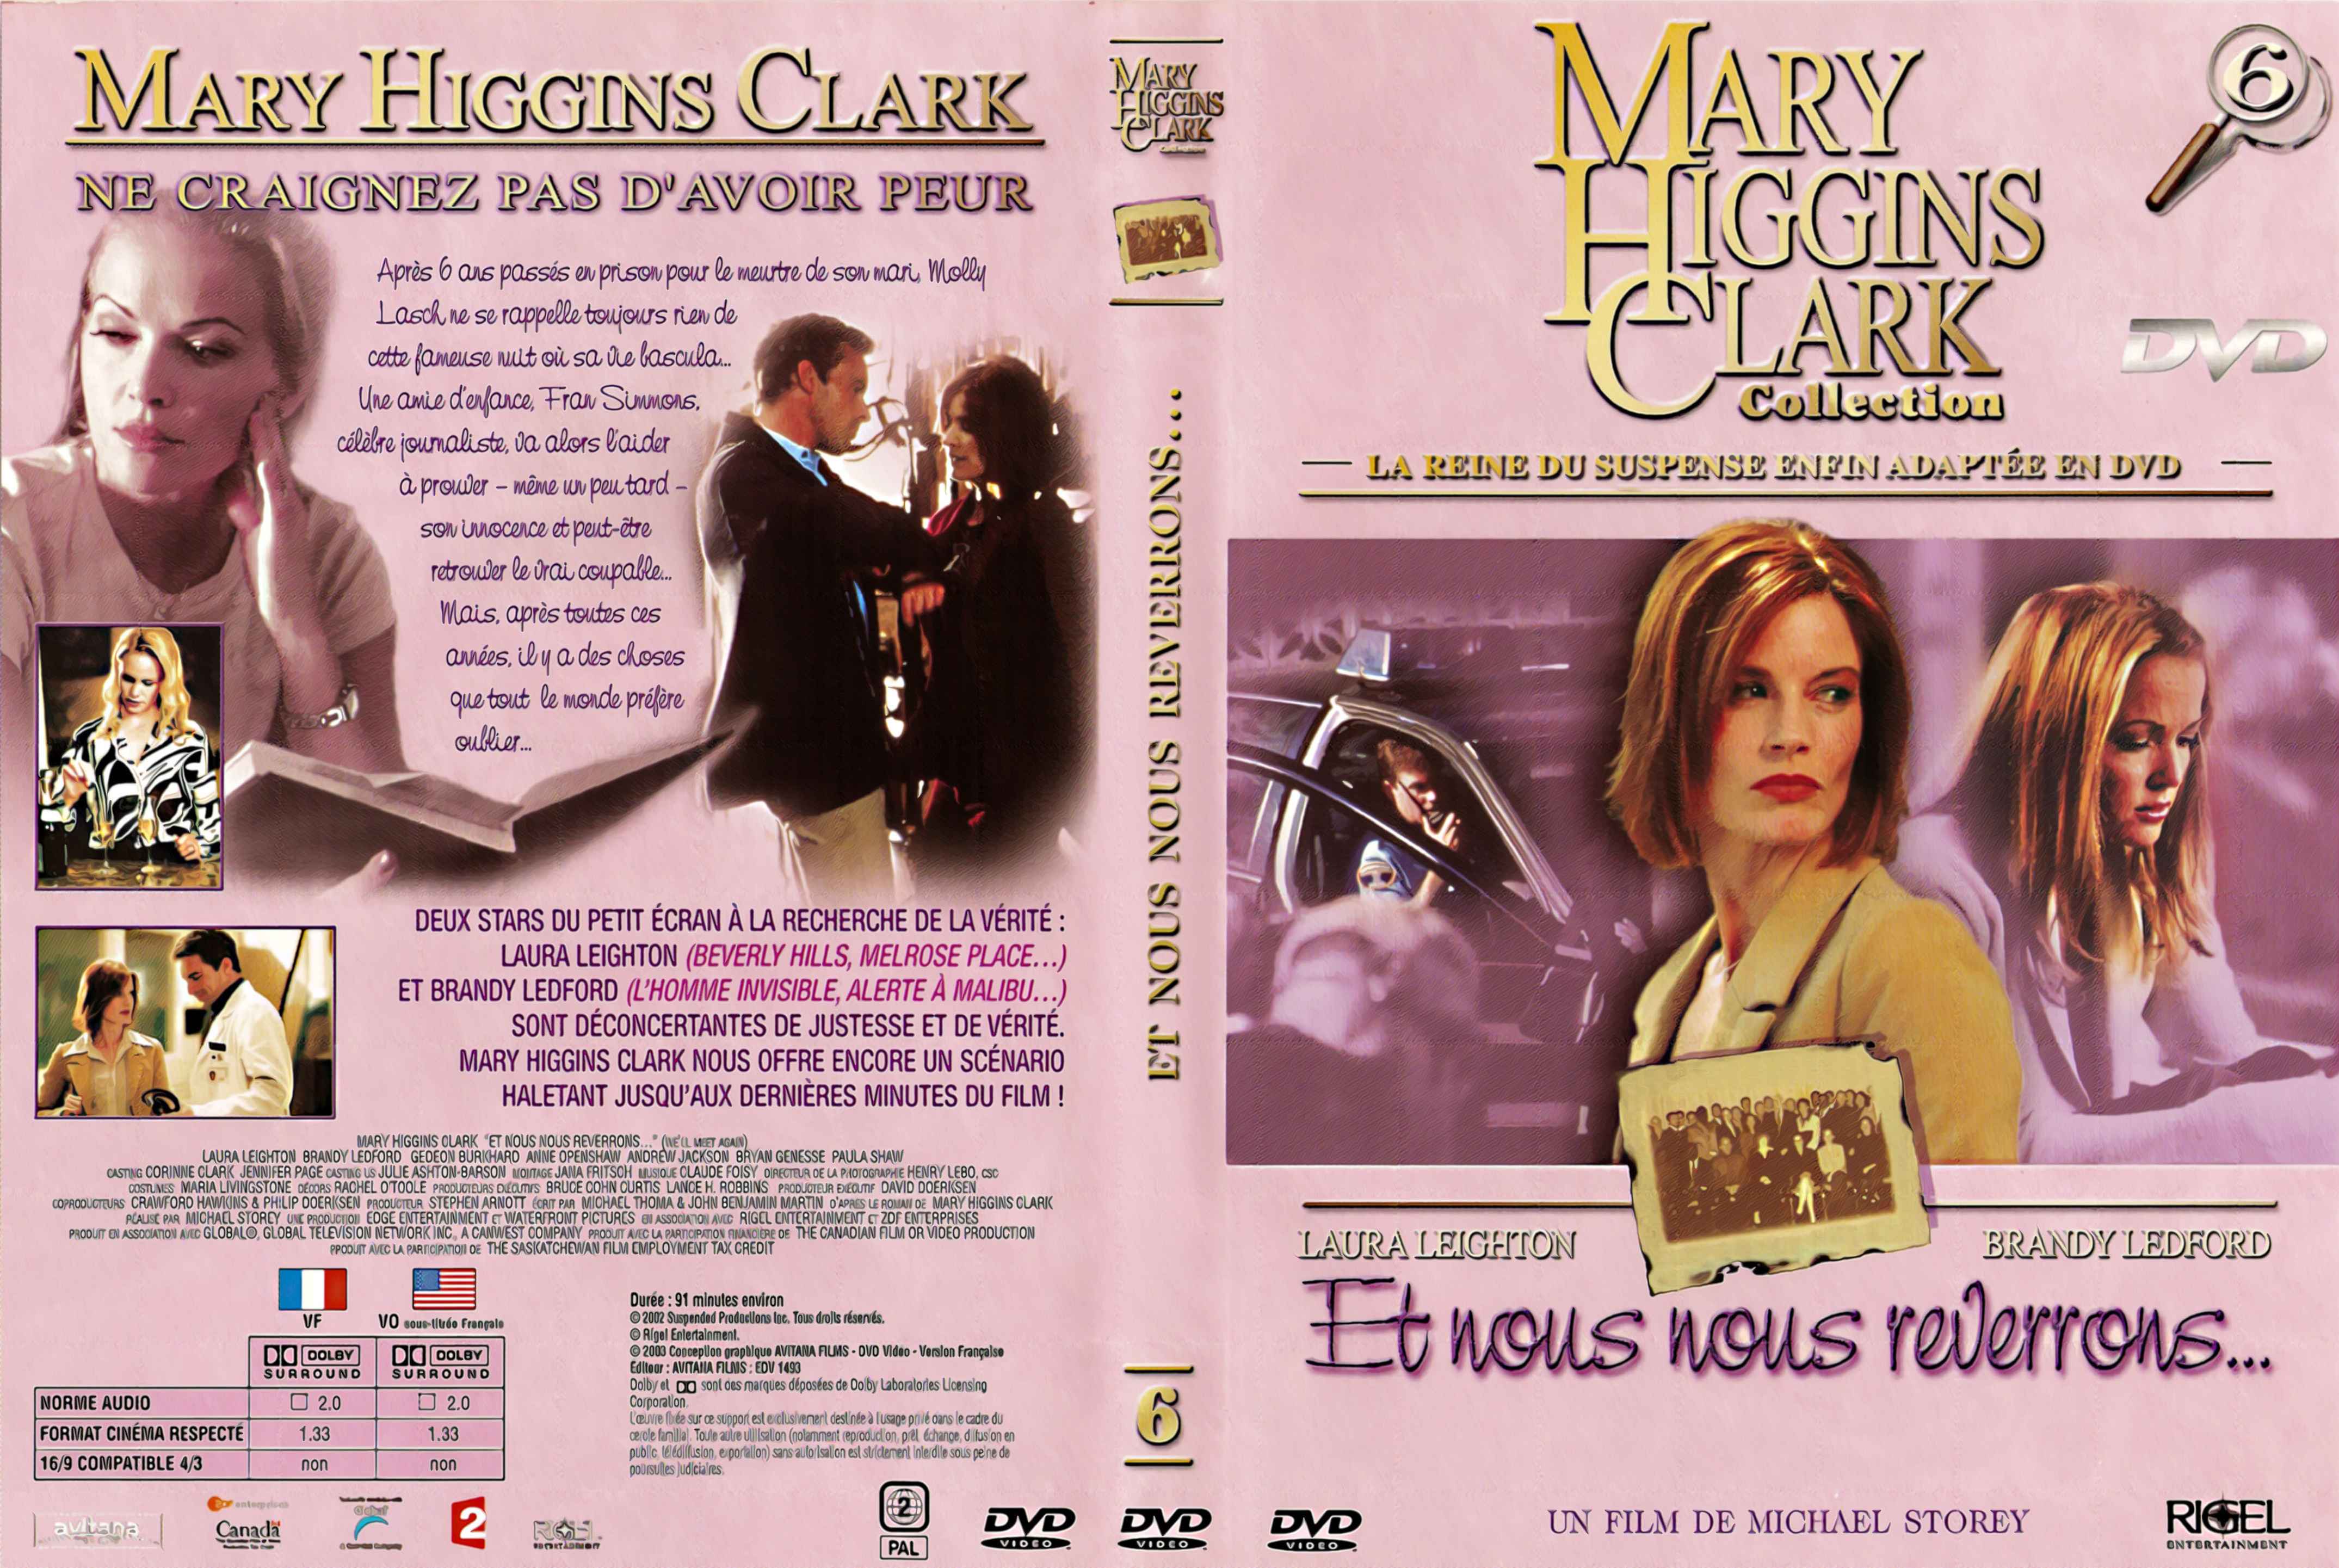 Jaquette DVD Mary Higgins Clark vol 06 - Et nous nous reverrons